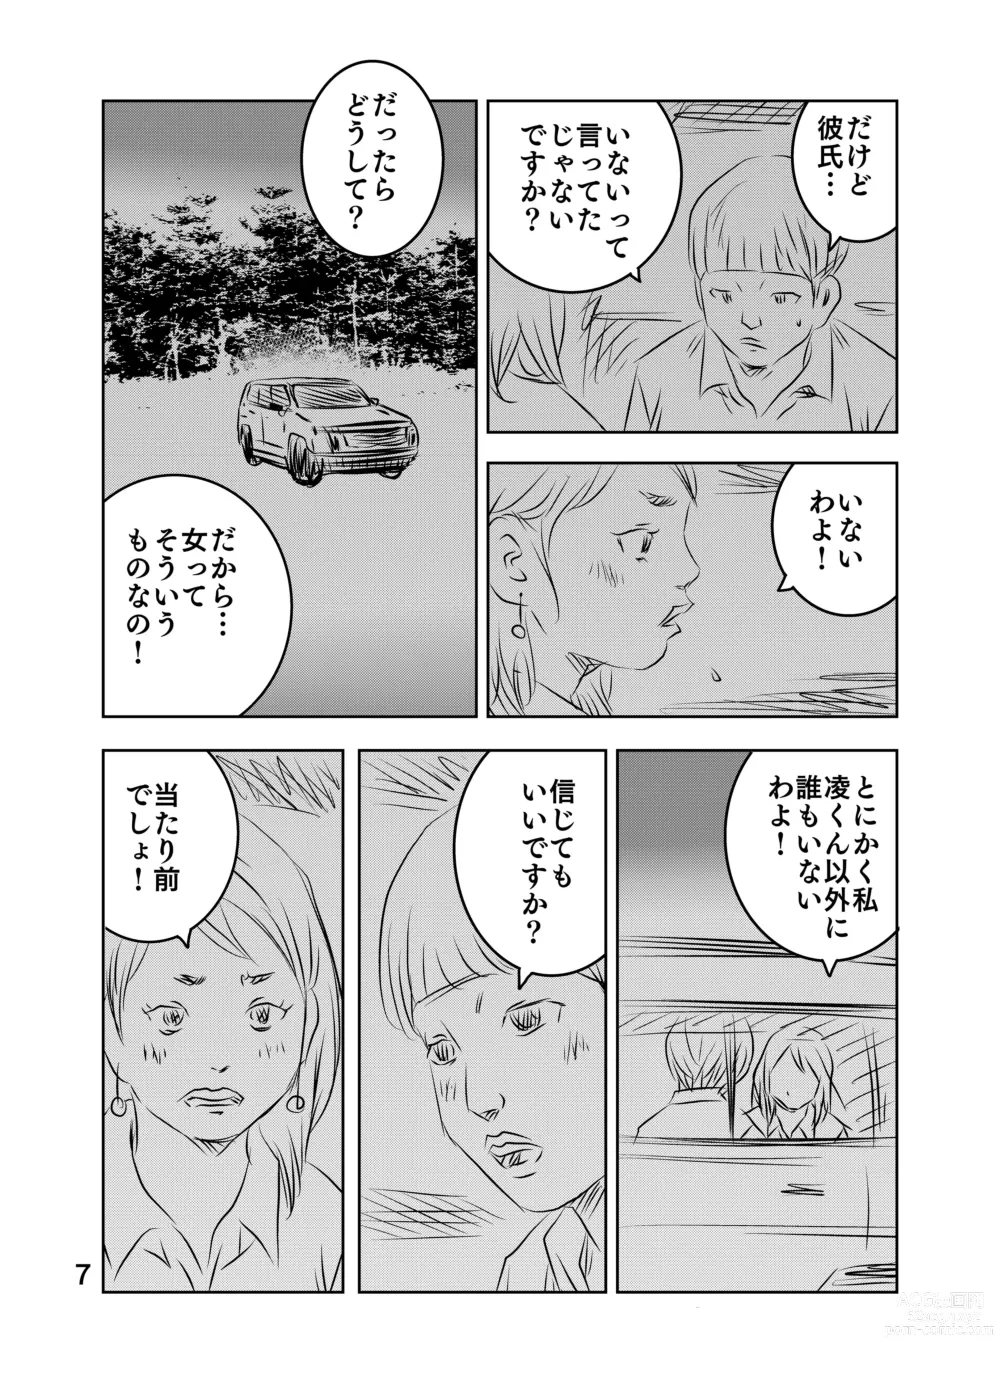 Page 73 of doujinshi Zurui Hito-tachi